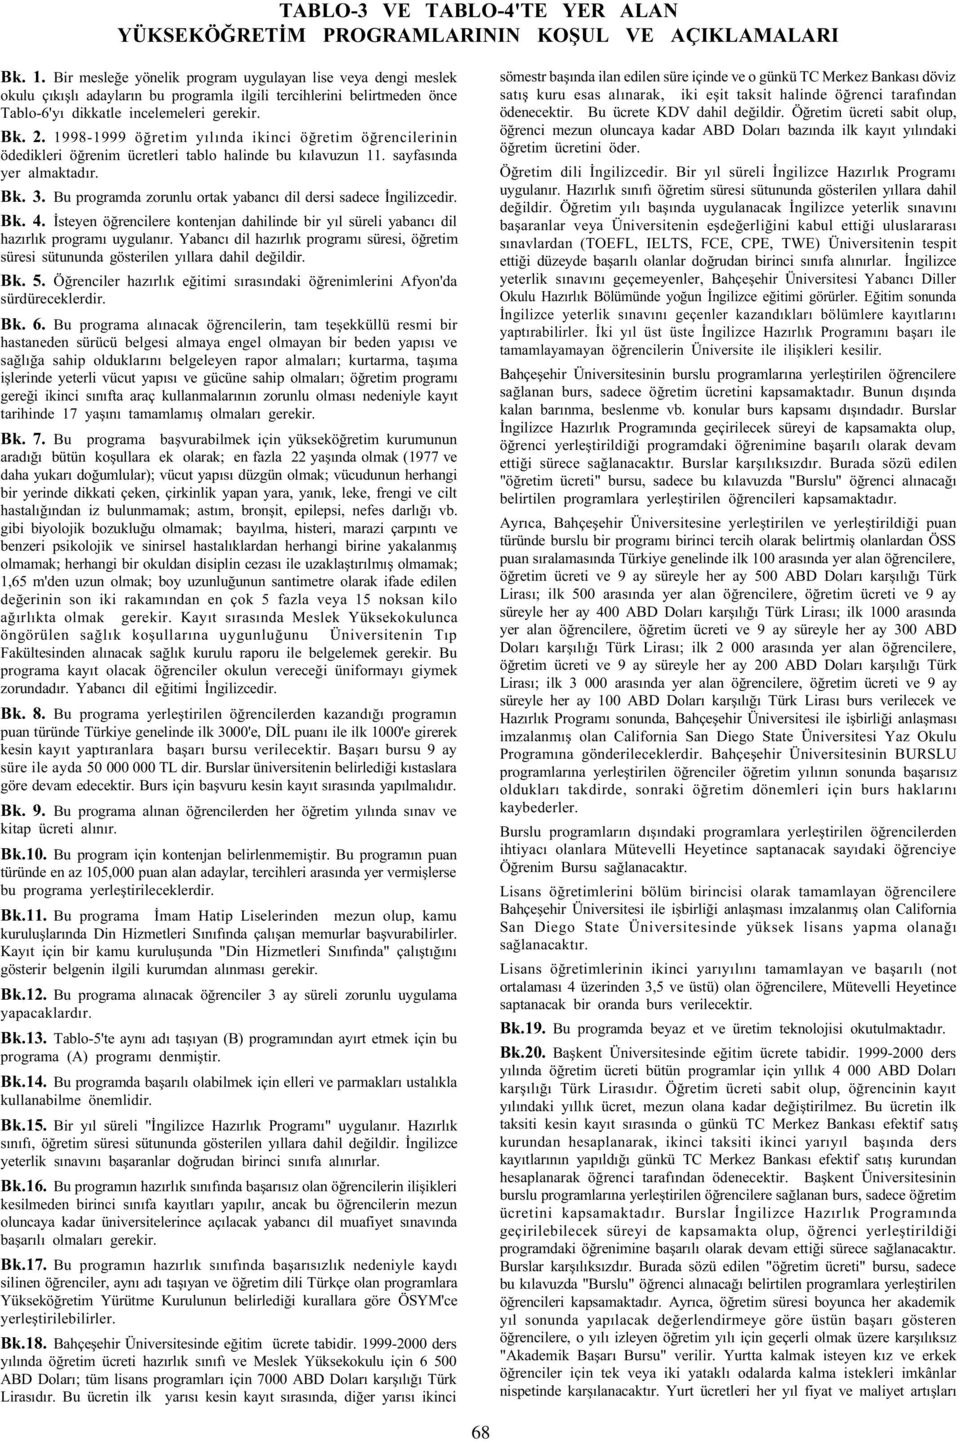 1998-1999 öðretim yýlýnda ikinci öðretim öðrencilerinin ödedikleri öðrenim ücretleri tablo halinde bu kýlavuzun 11. sayfasýnda yer almaktadýr. Bk. 3.